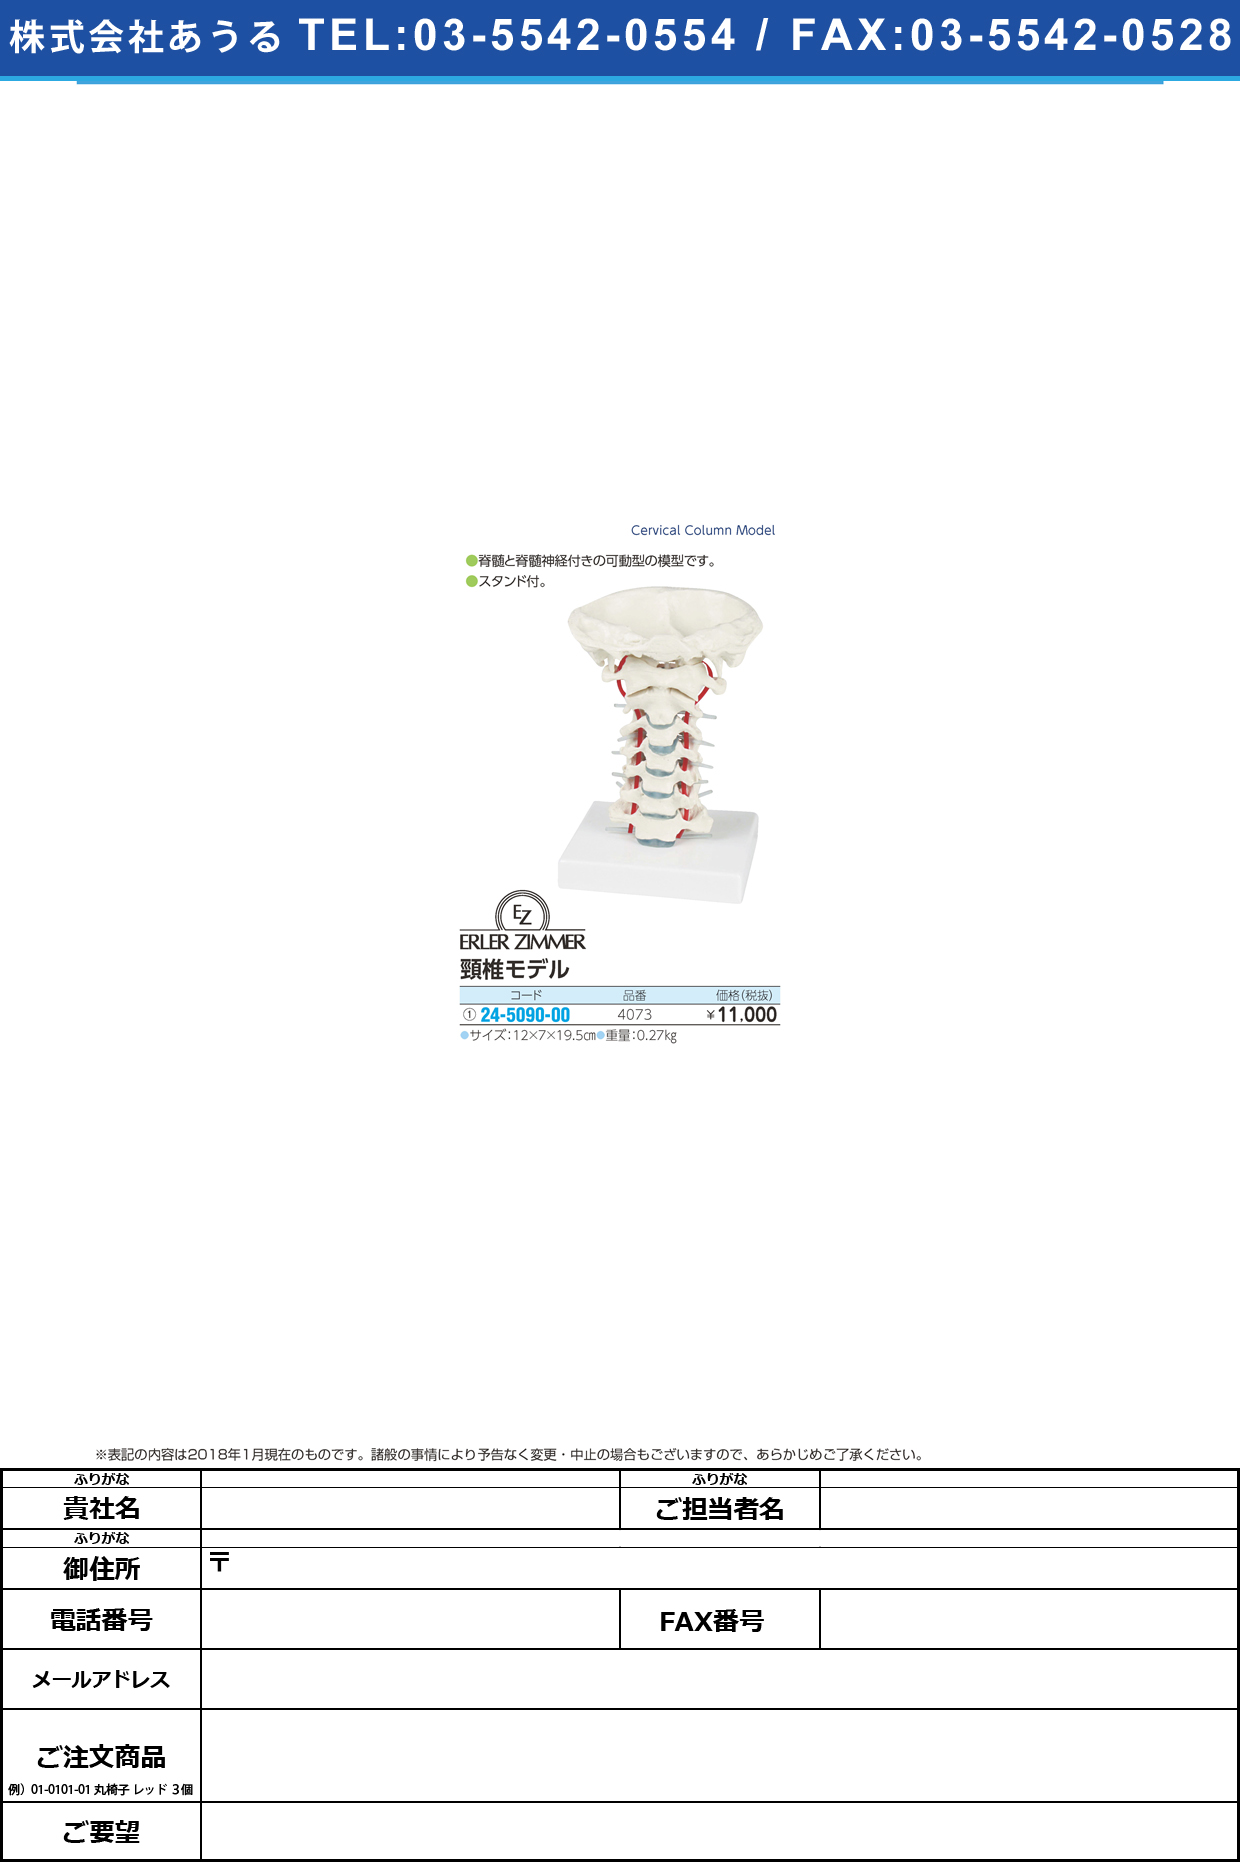 (24-5090-00)頸椎モデル 4073 ｹｲﾂｲﾓﾃﾞﾙ(エルラージーマー社)【1個単位】【2019年カタログ商品】